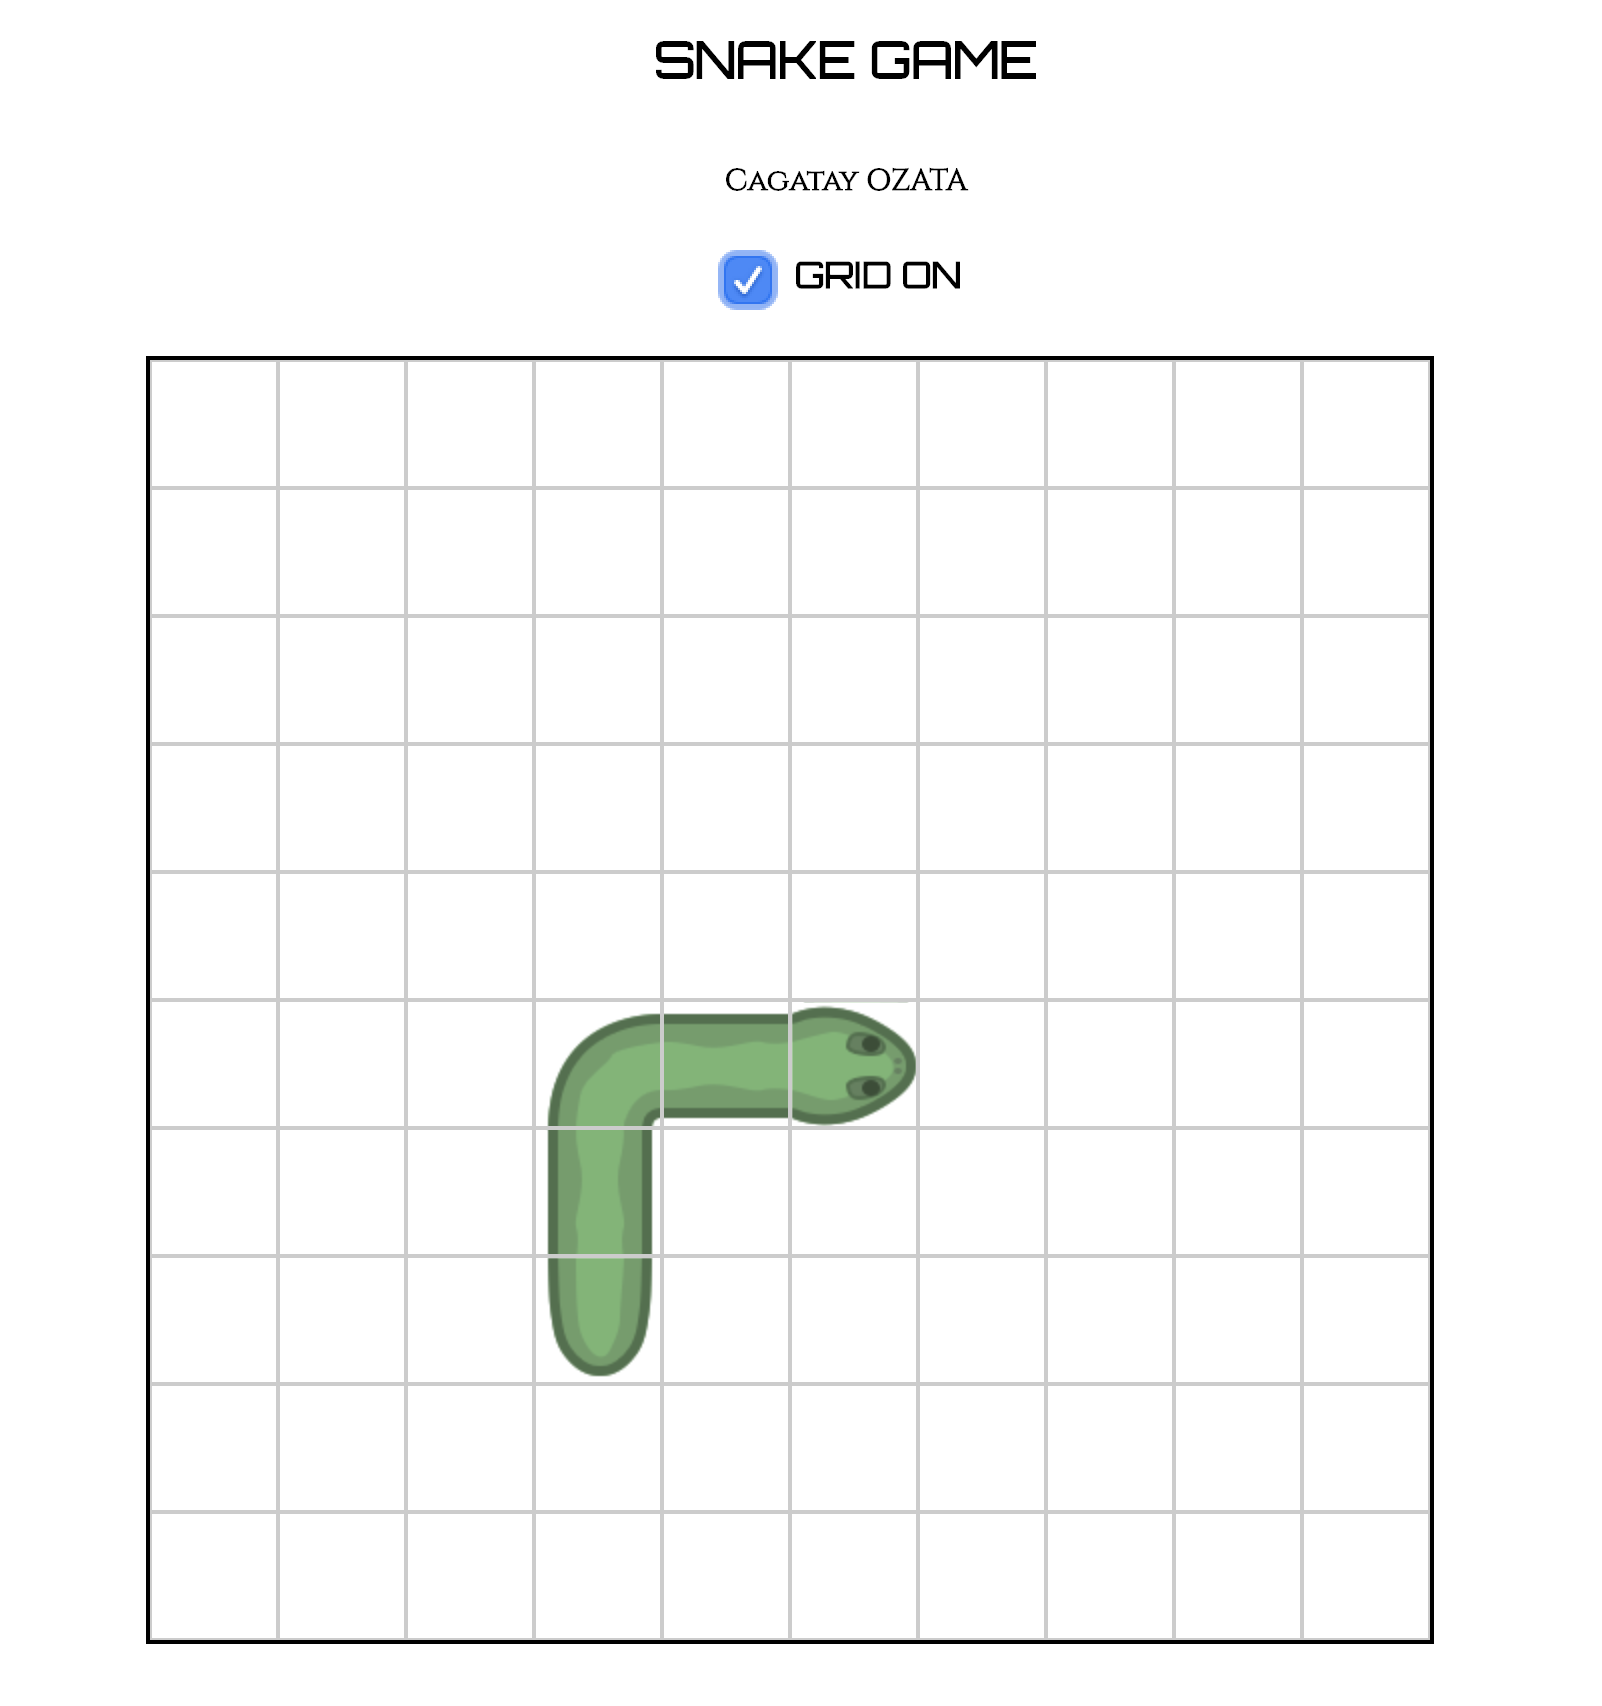 Basic Snake HTML and JavaScript Game · GitHub